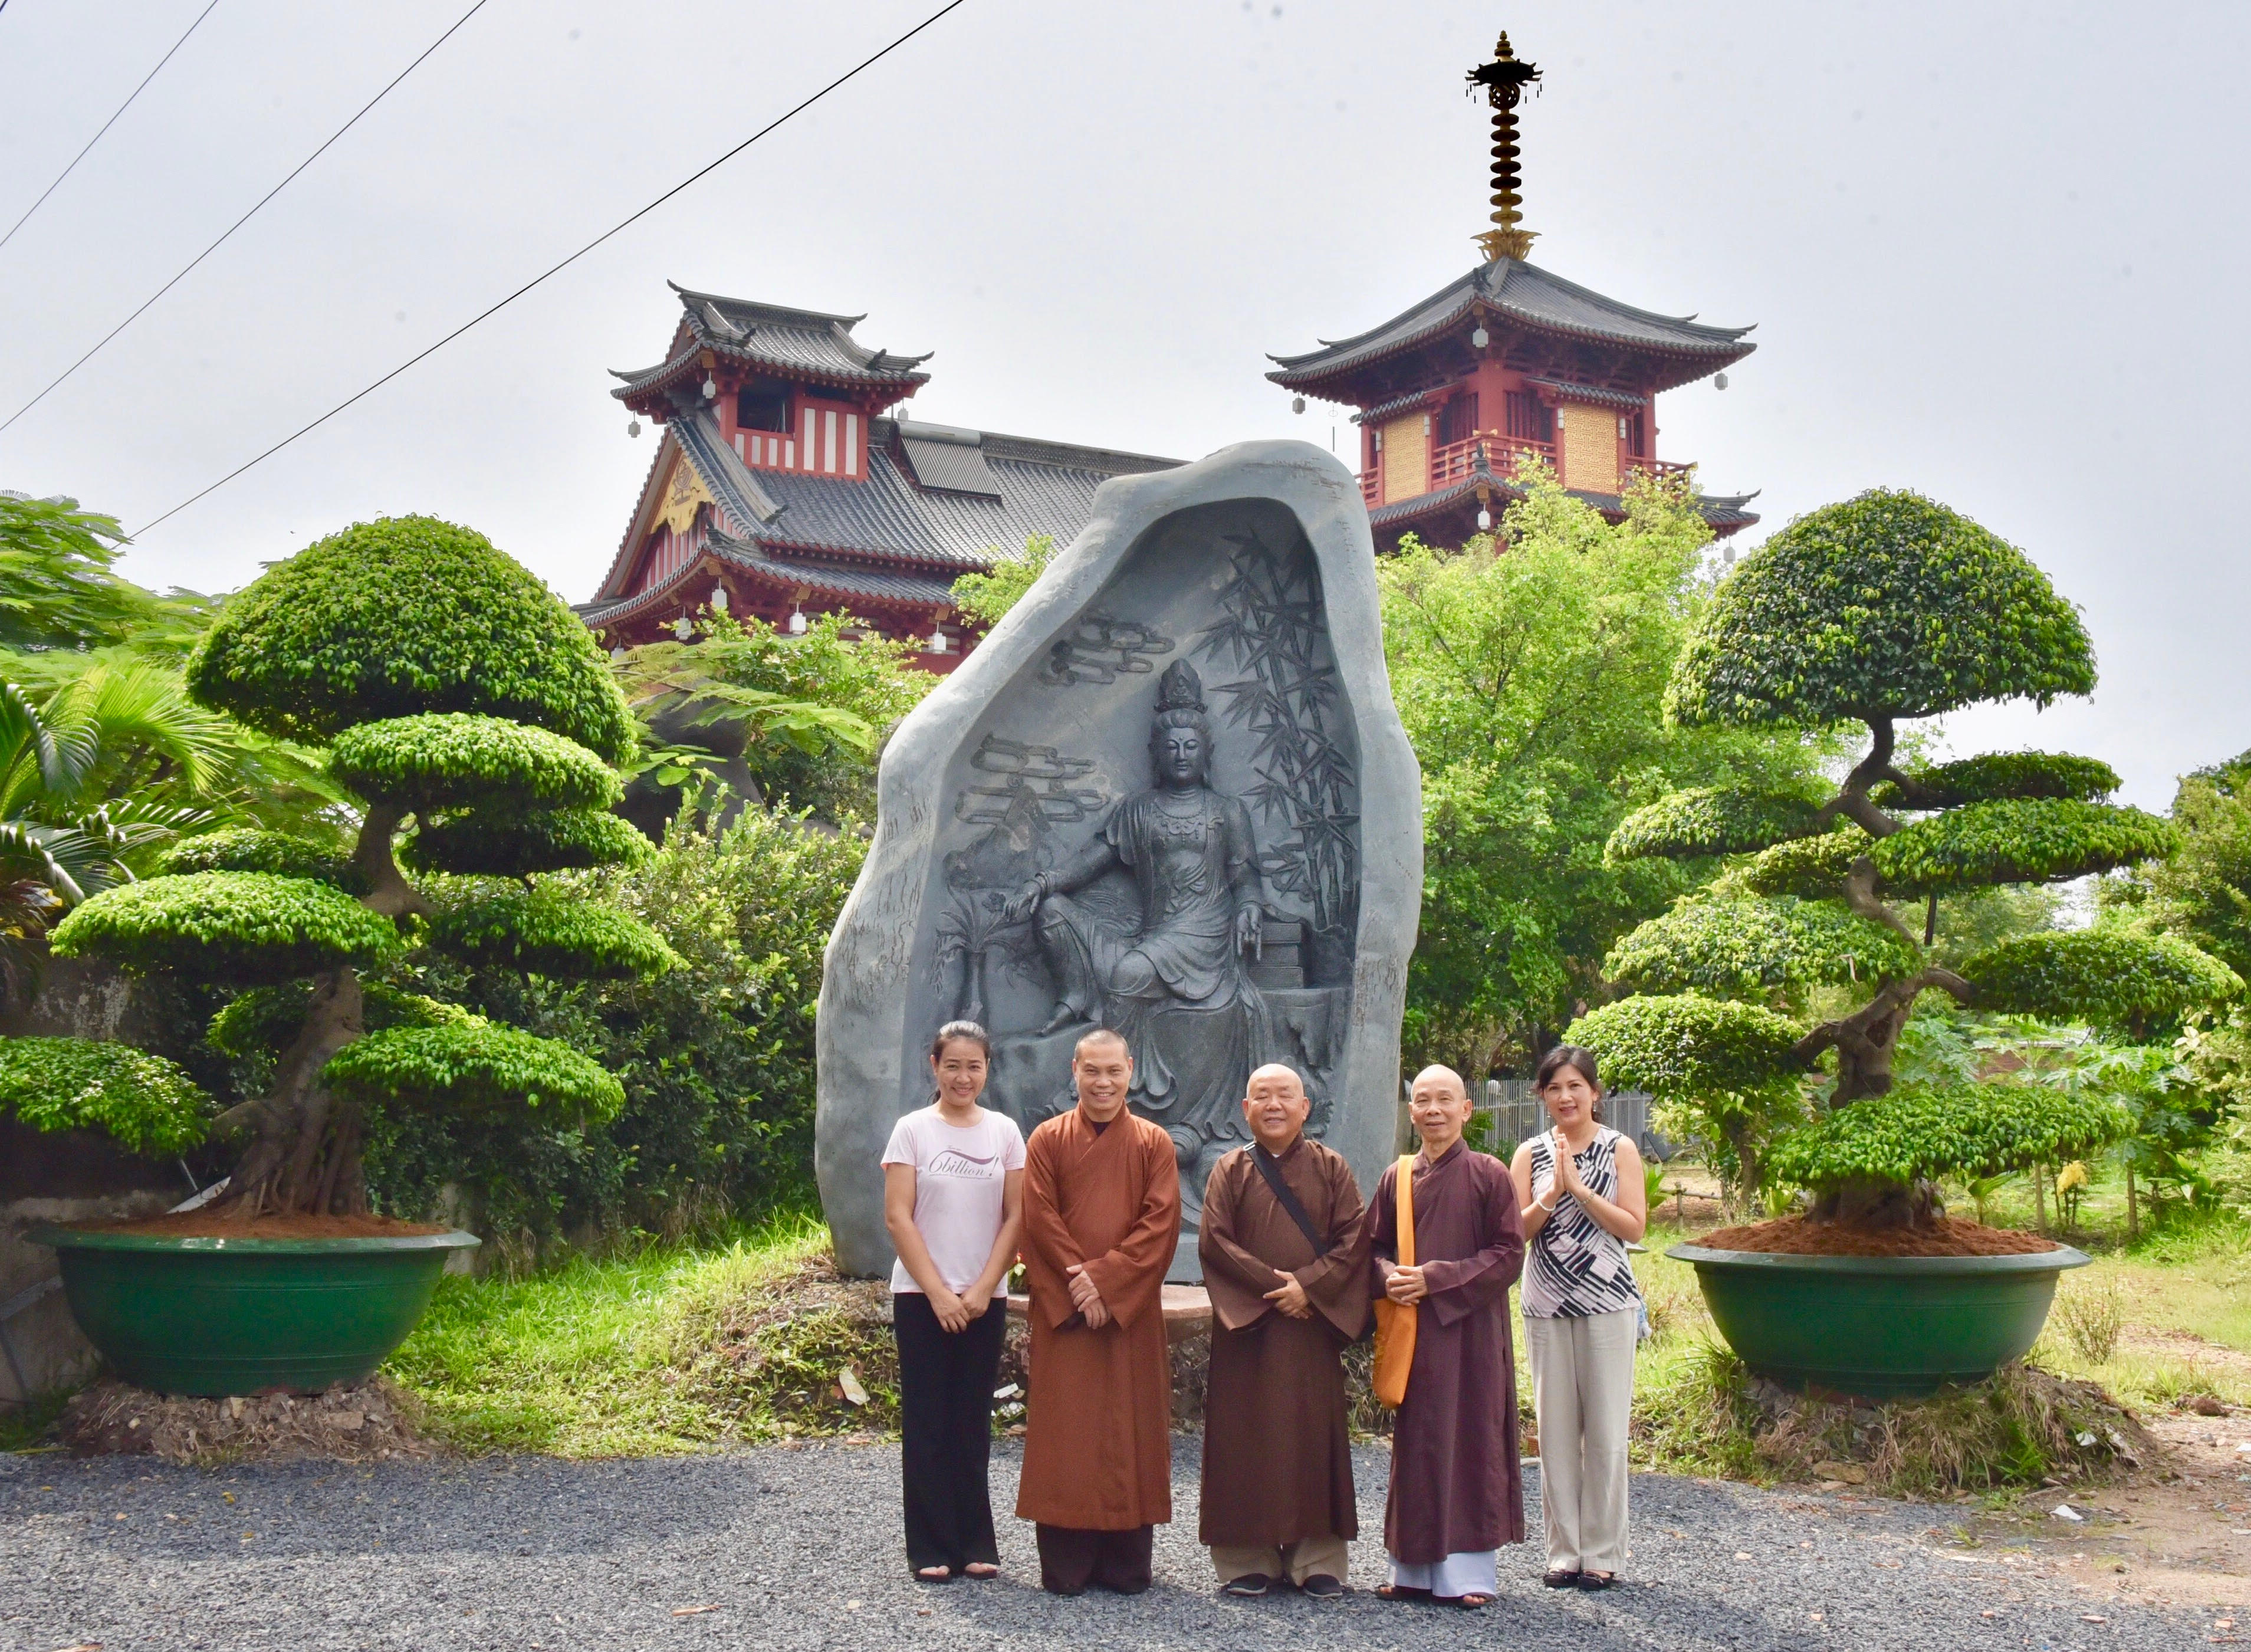 Hòa thượng Thích Nguyên Đạt (Hoa Kỳ) và Hoà thượng Thích Minh Tuệ viếng thăm Tu Viện Khánh An.